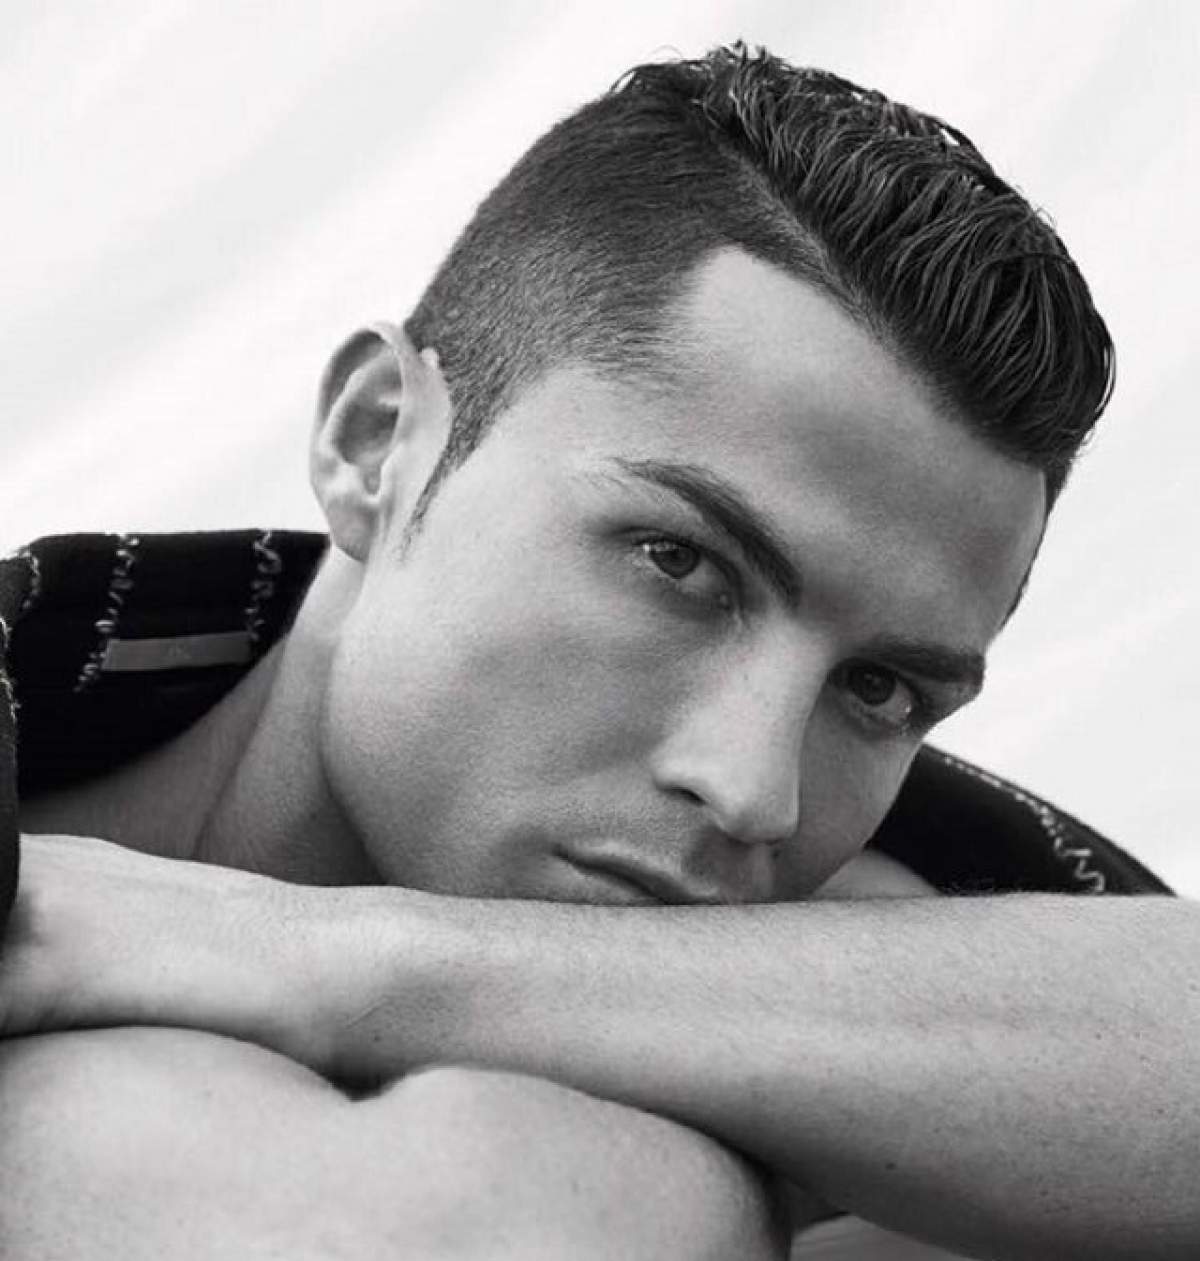 VIDEO / Imagini inedite! Cristiano Ronaldo a fost surpins în timp ce se dezlănţuie şi cântă muzică românească